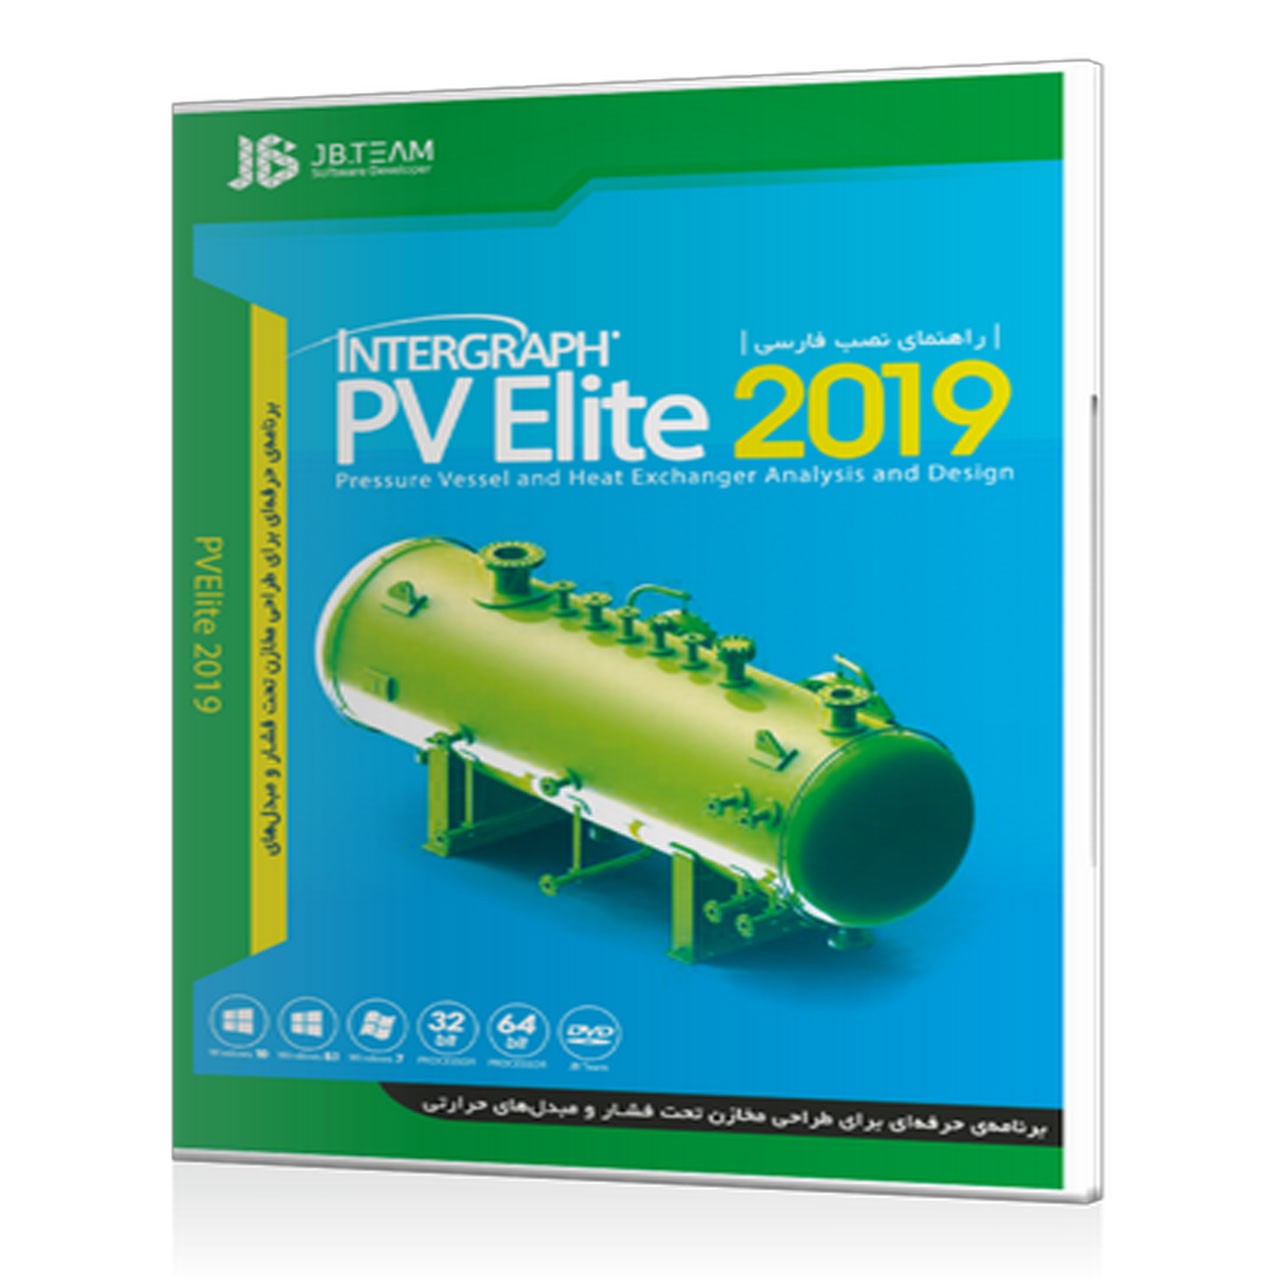 نرم افزار Intergraph PV Elite 2019